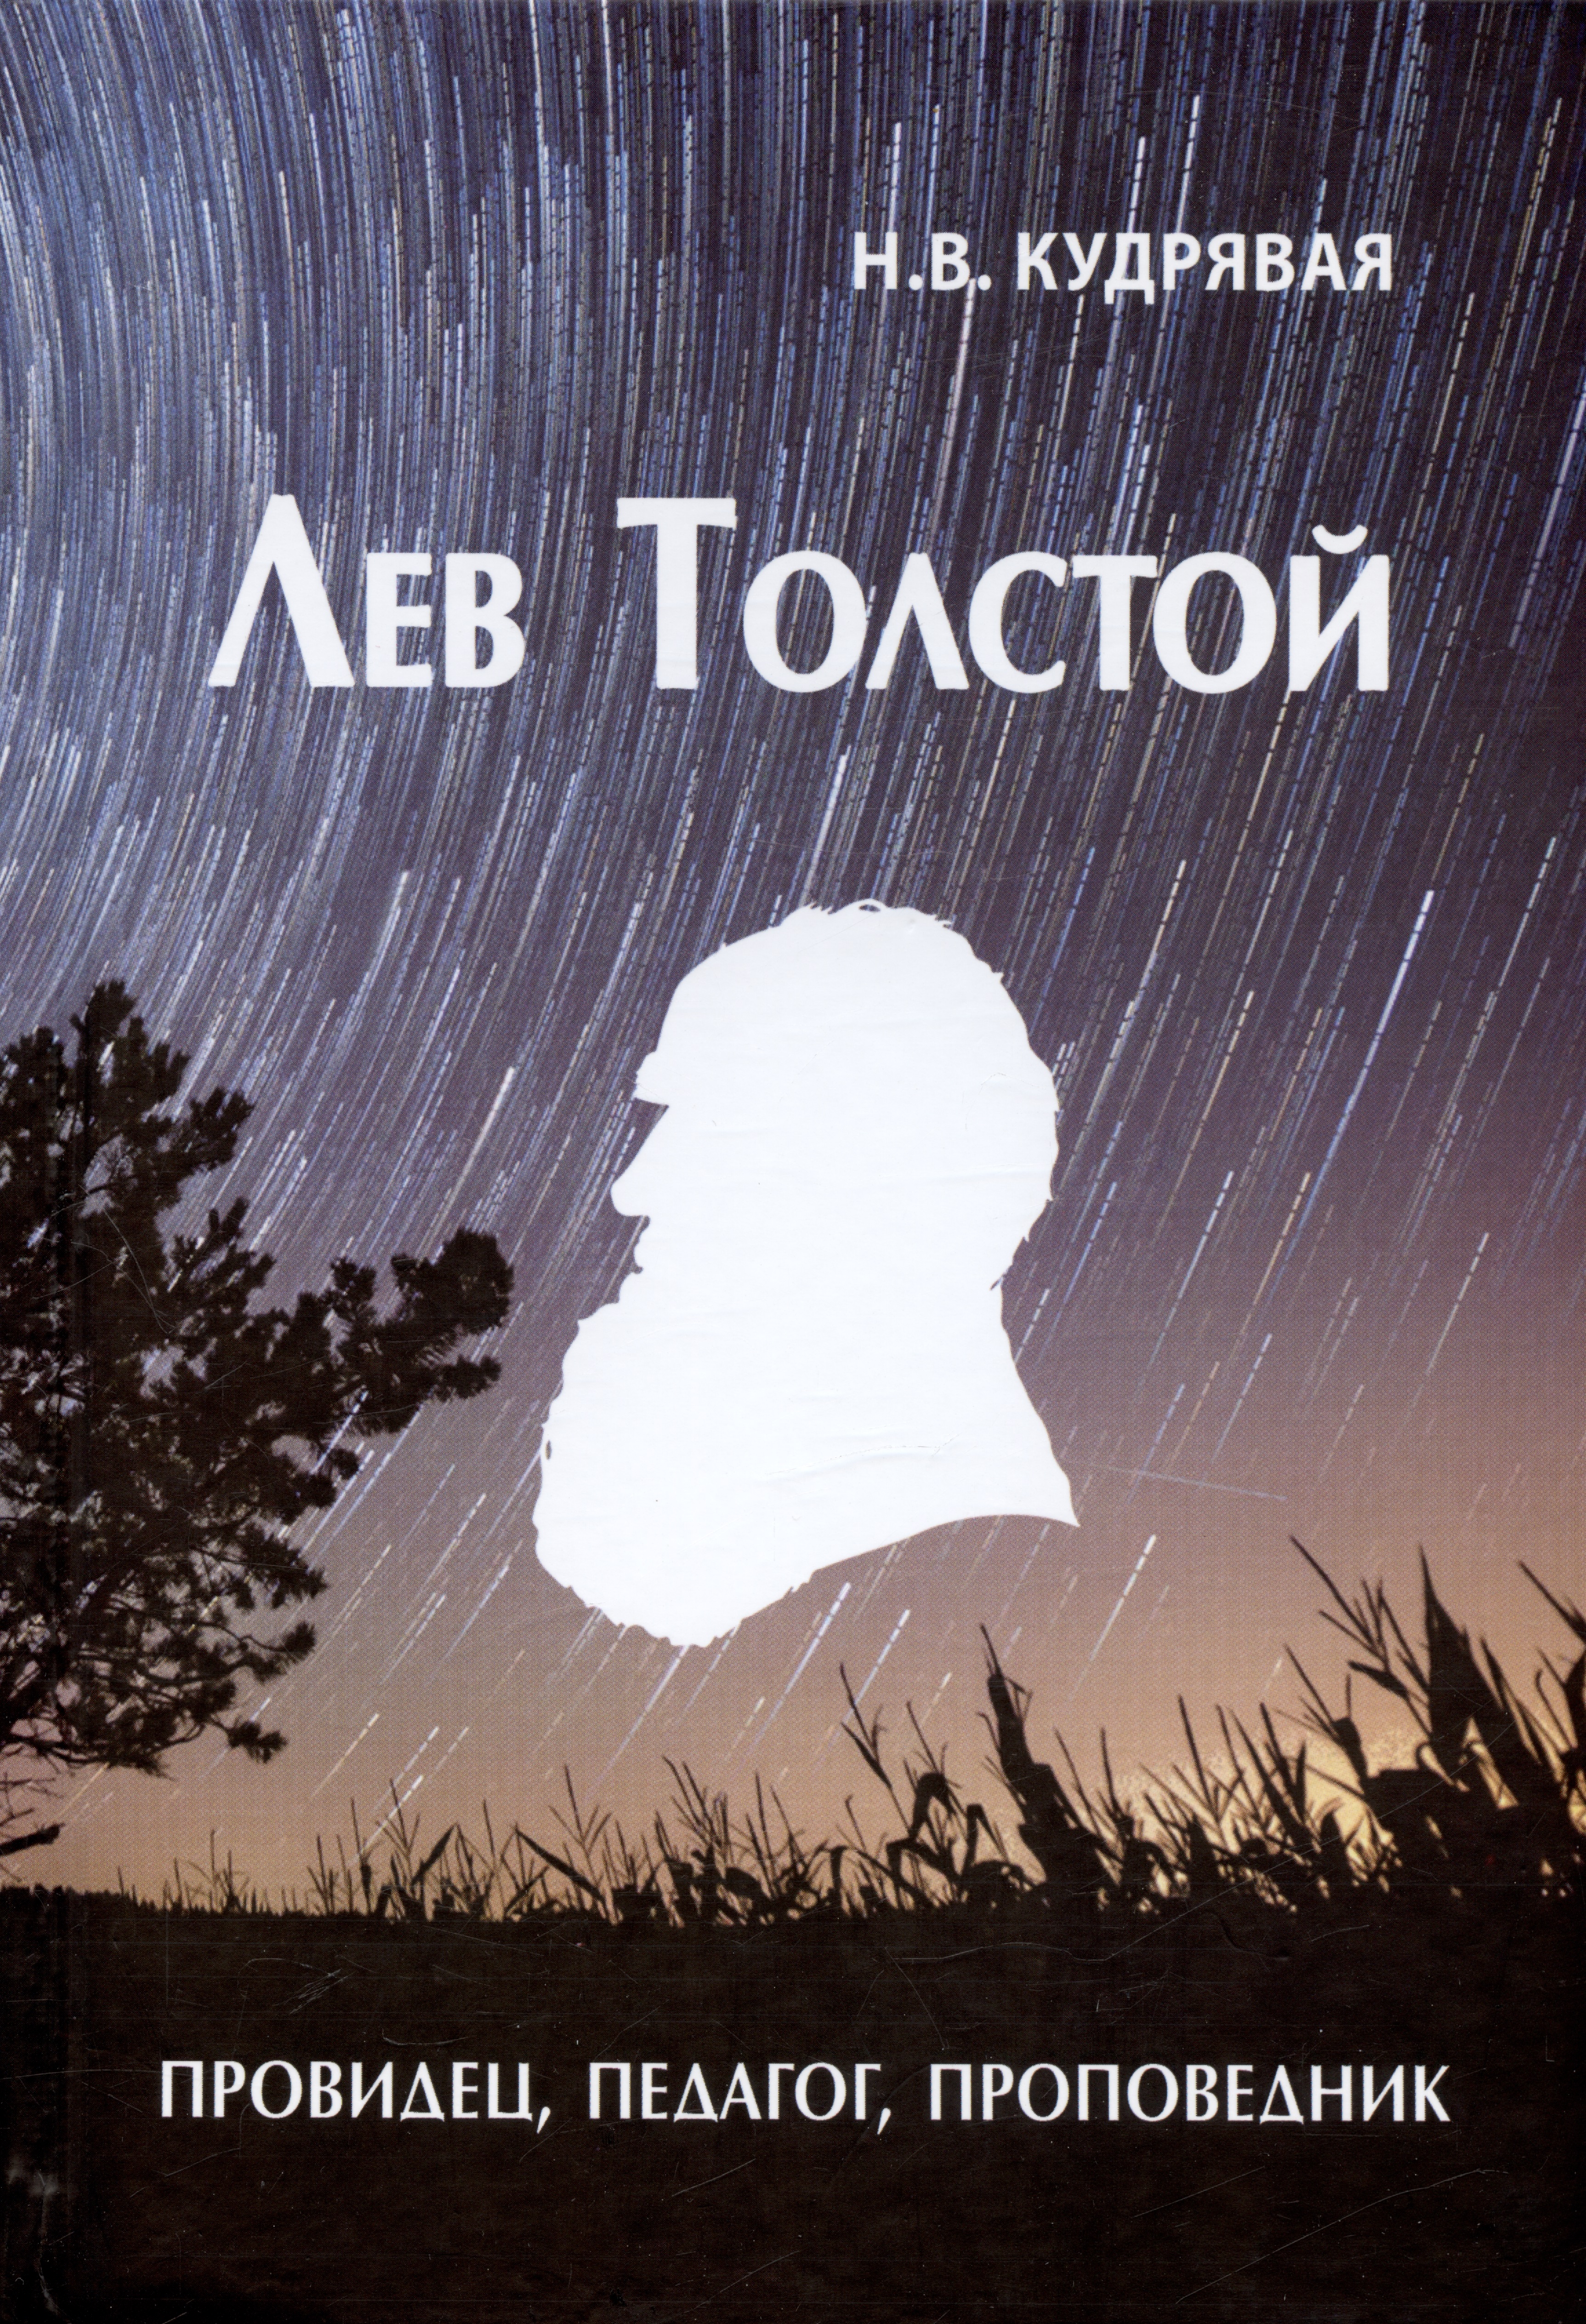 Лев Толстой - провидец, педагог, проповедник шиманский гермоген иванович болезни и их значение в религиозно нравственной жизни христианства